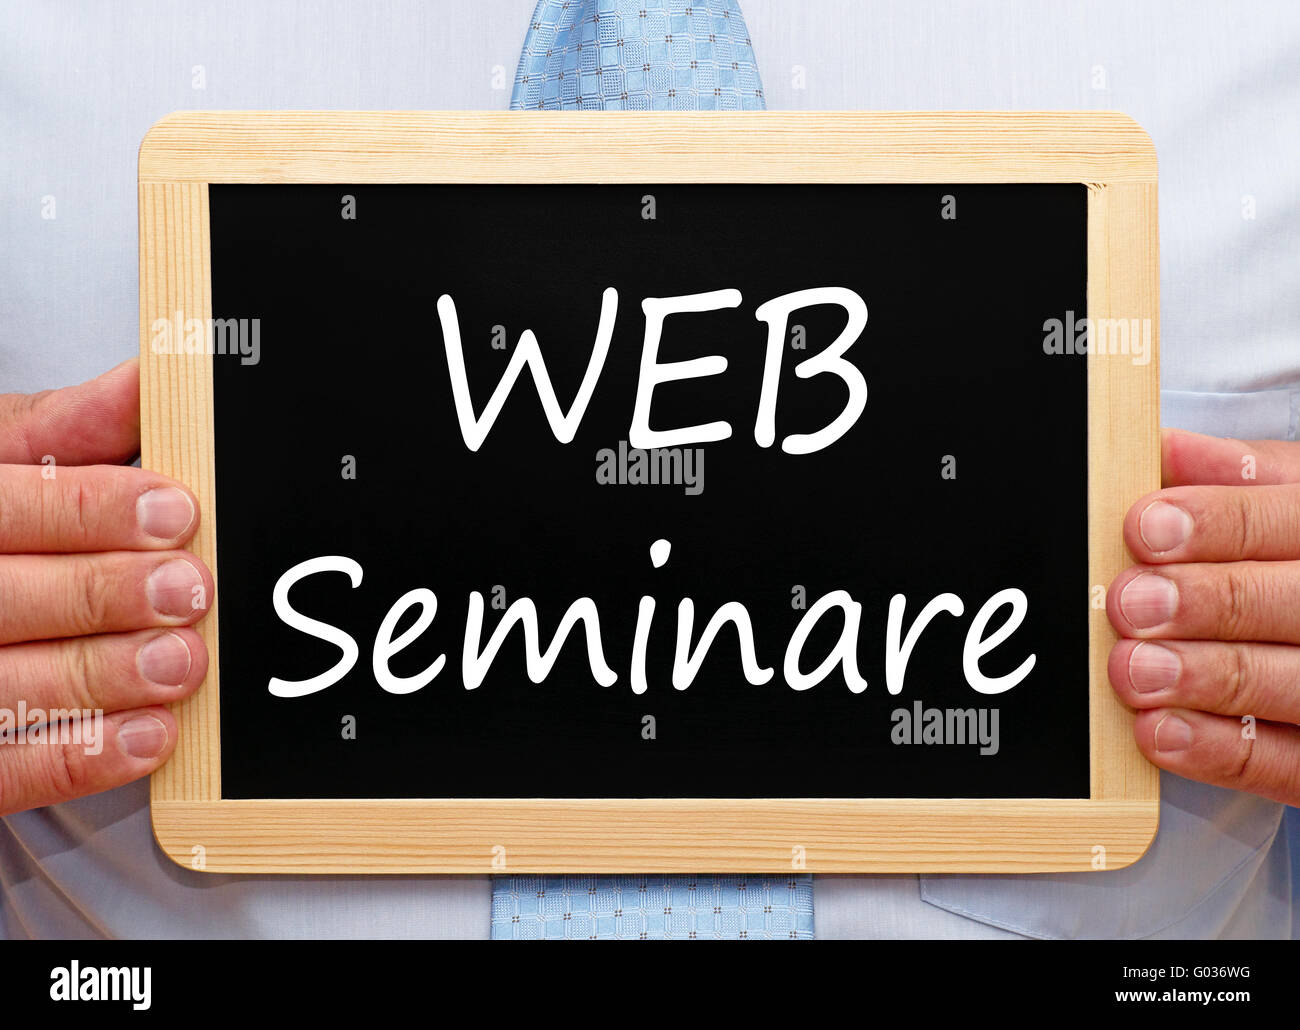 WEB Seminare Stock Photo